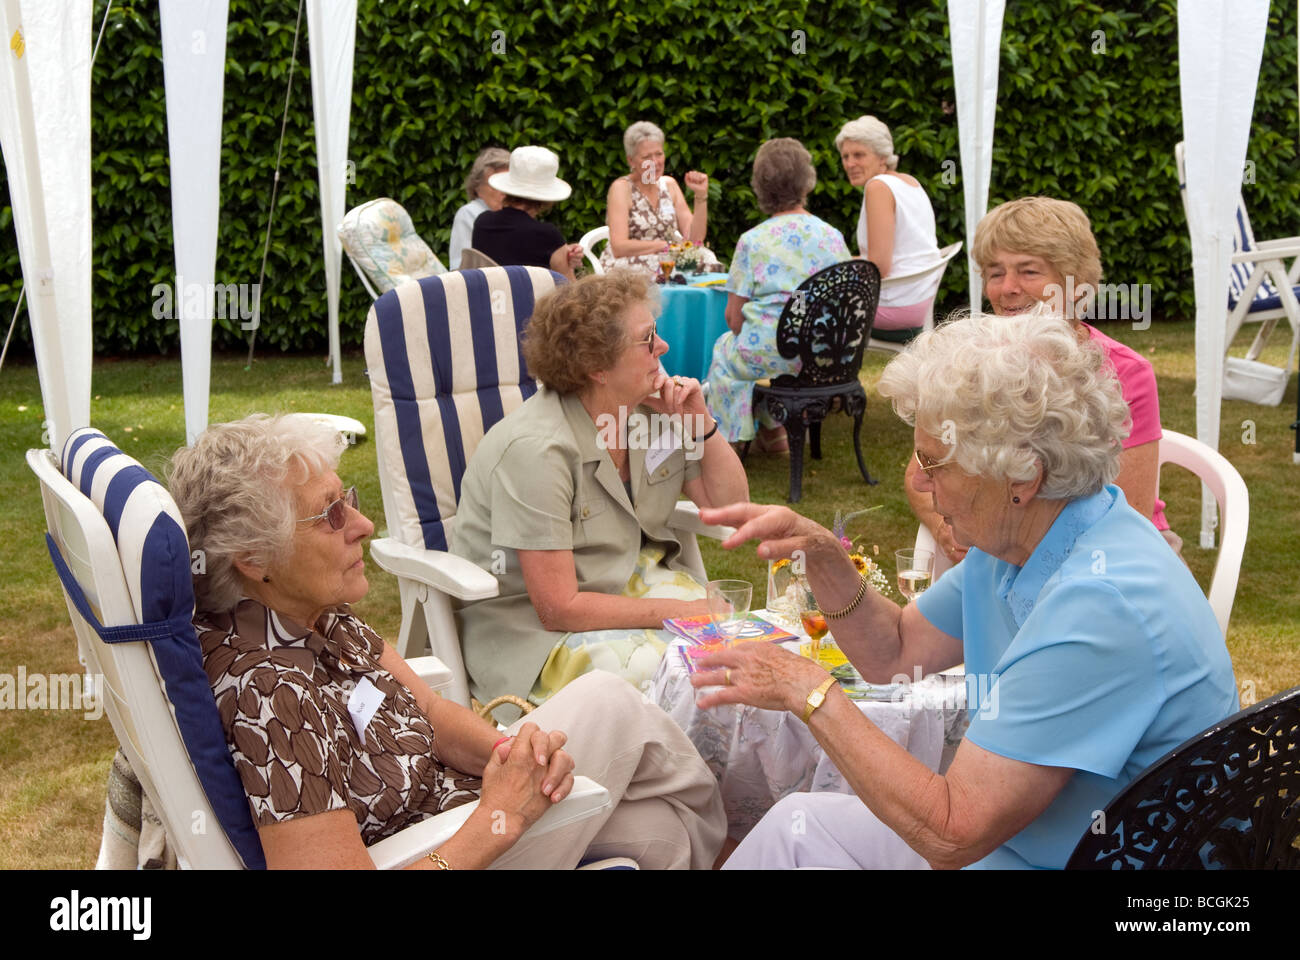 Esposas Club celebrarán el 60 aniversario con una fiesta en el jardín, Haslemere, Surrey, Reino Unido. Foto de stock